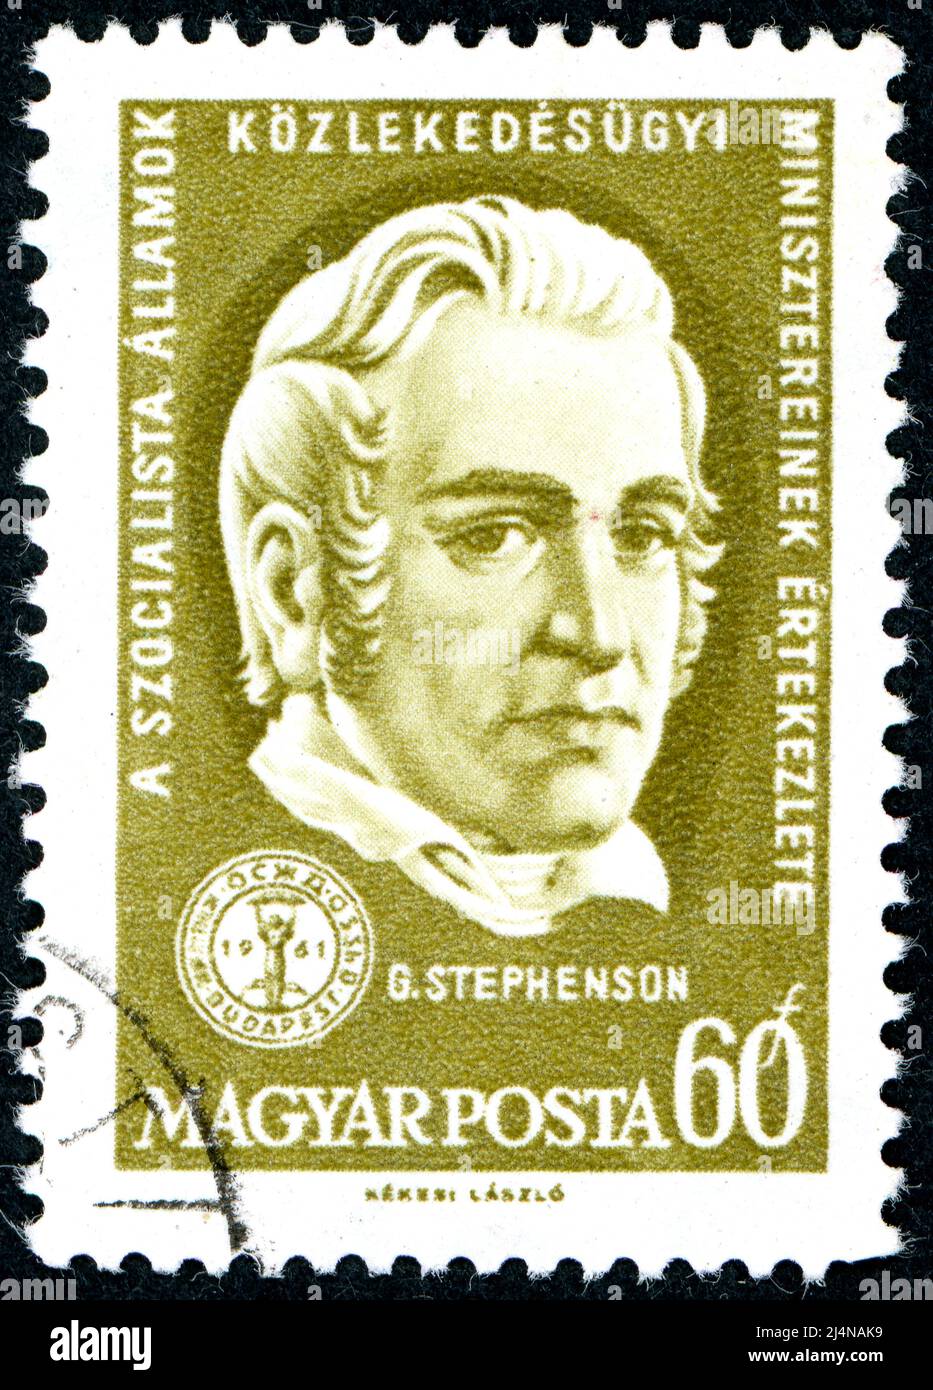 In Ungarn gedruckte Briefmarke, zeigt Porträt eines englischen Bauingenieurs und Maschinenbauingenieurs George Stephenson, um 1961 Stockfoto